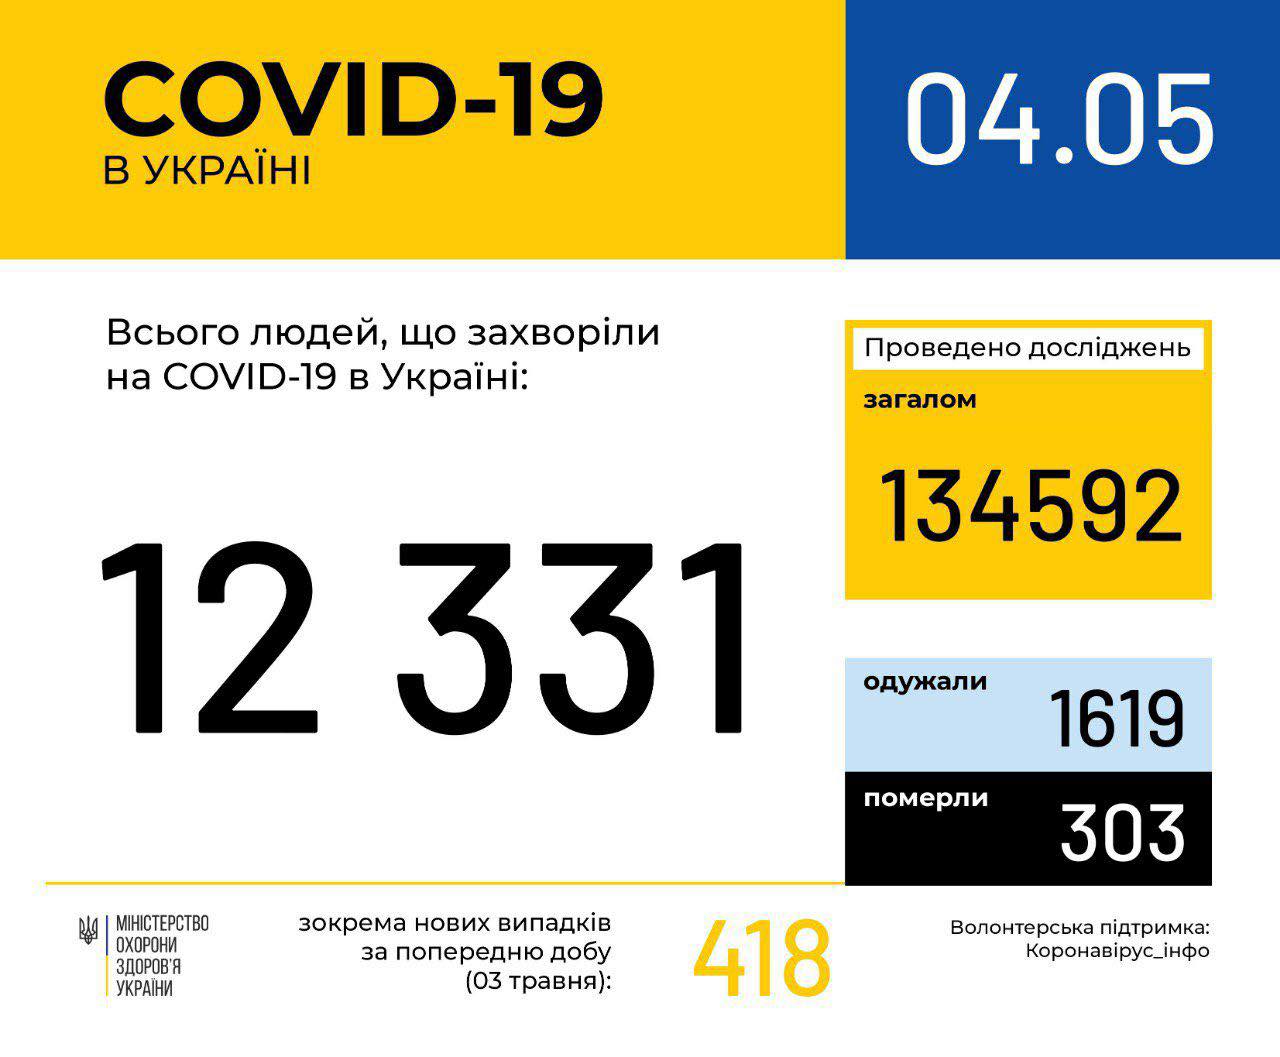 В Україні зафіксовано 12331 випадок коронавірусної хвороби COVID-19, - МОЗ